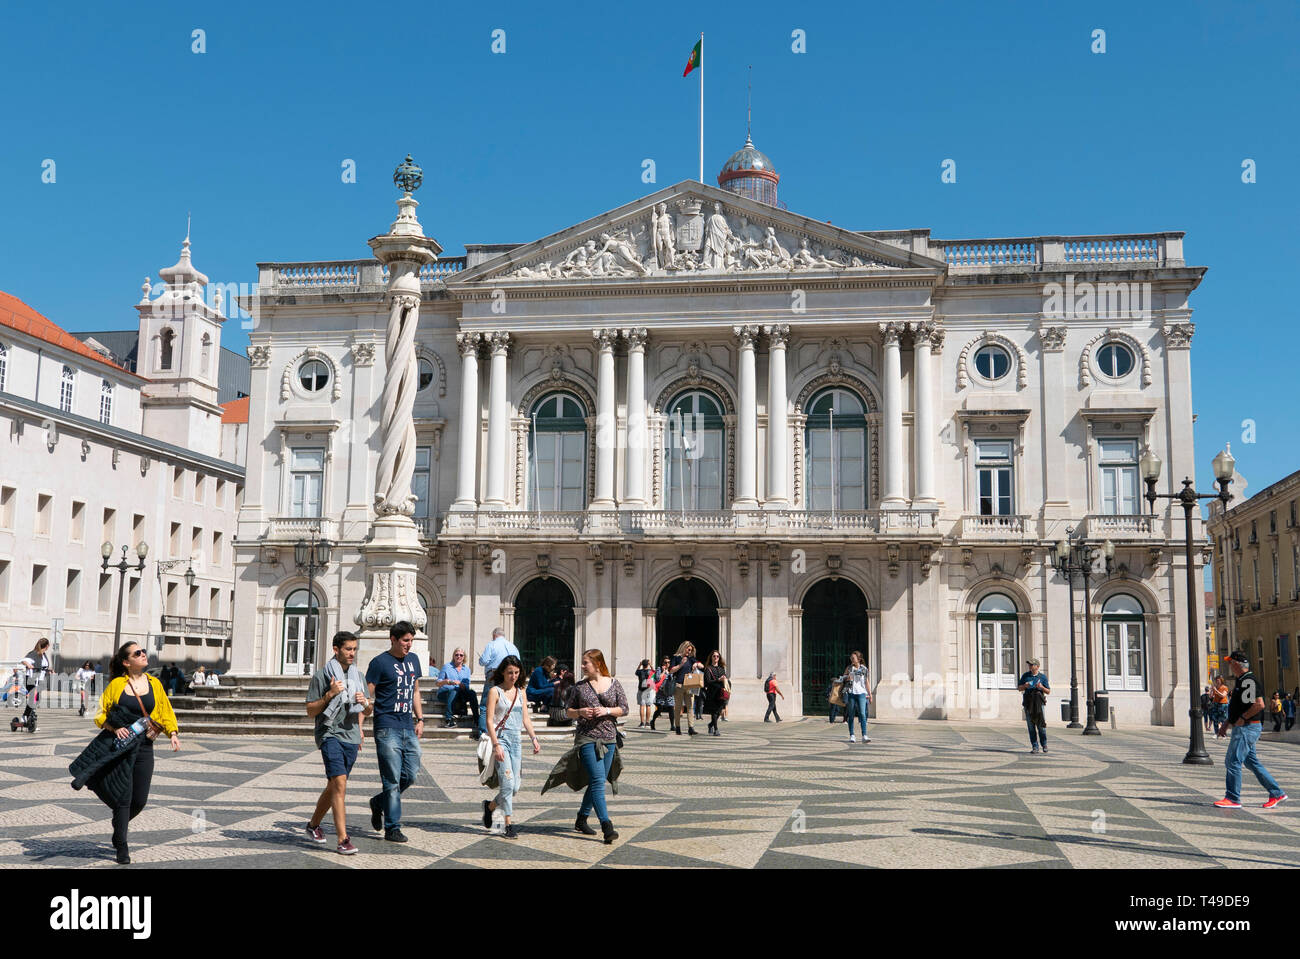 Hôtel de ville de Lisbonne (Câmara Municipal de Lisboa), Praça do Município, Lisbonne, Portugal, Europe Banque D'Images